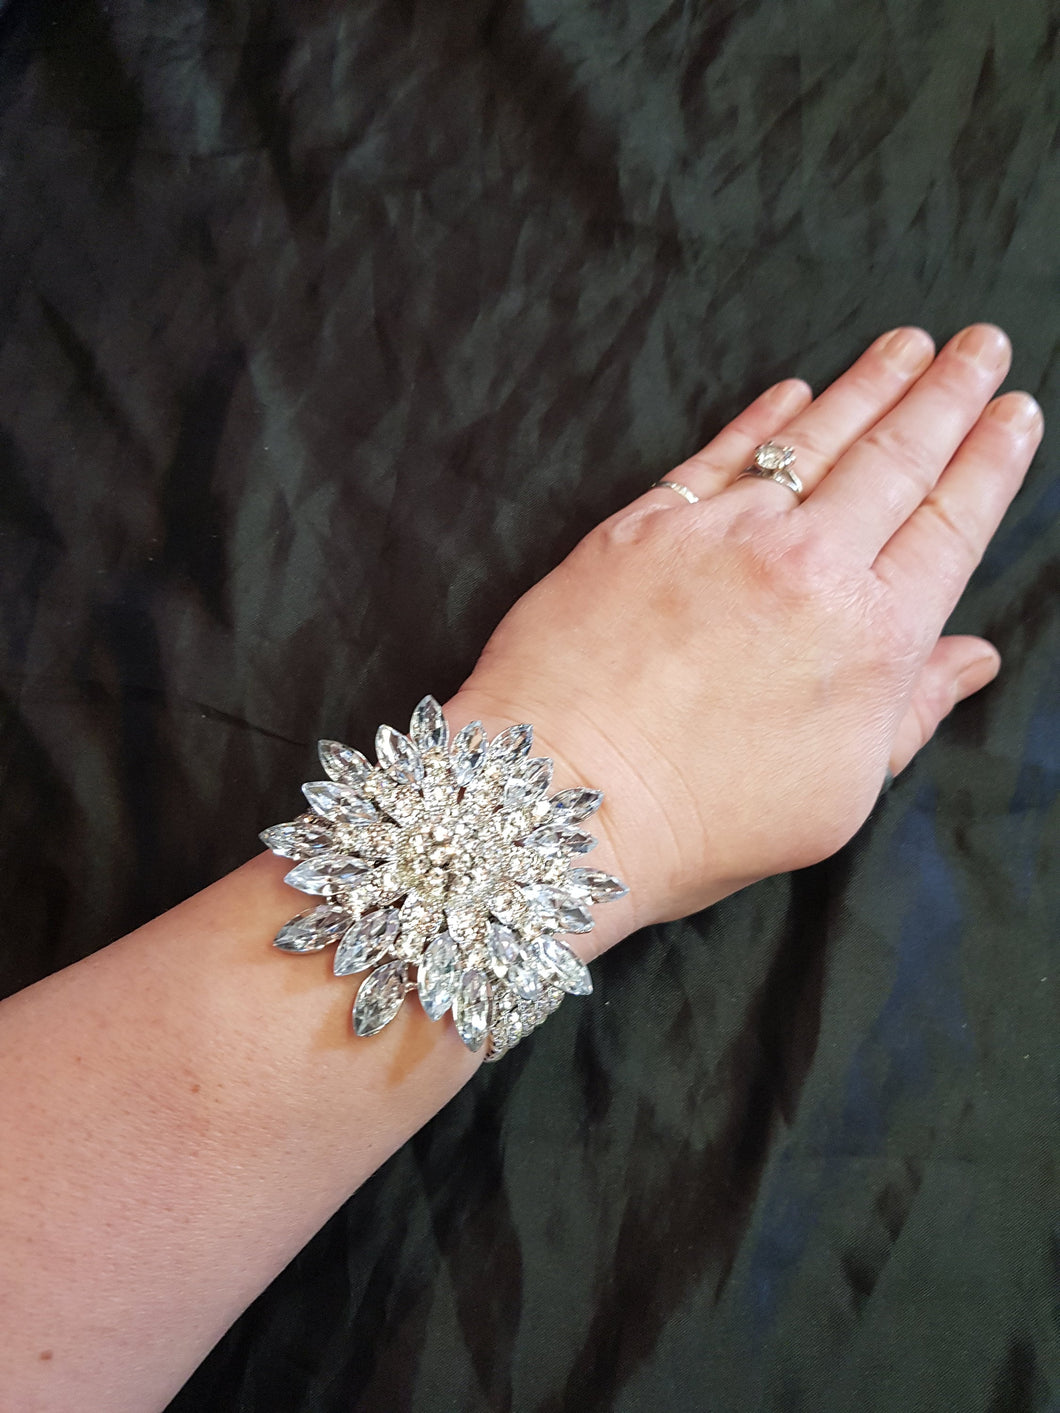 Wrist corsage ,Crystal rhinestone Wedding Cuff, bridesmaid Bracelet by Crystal wedding uk